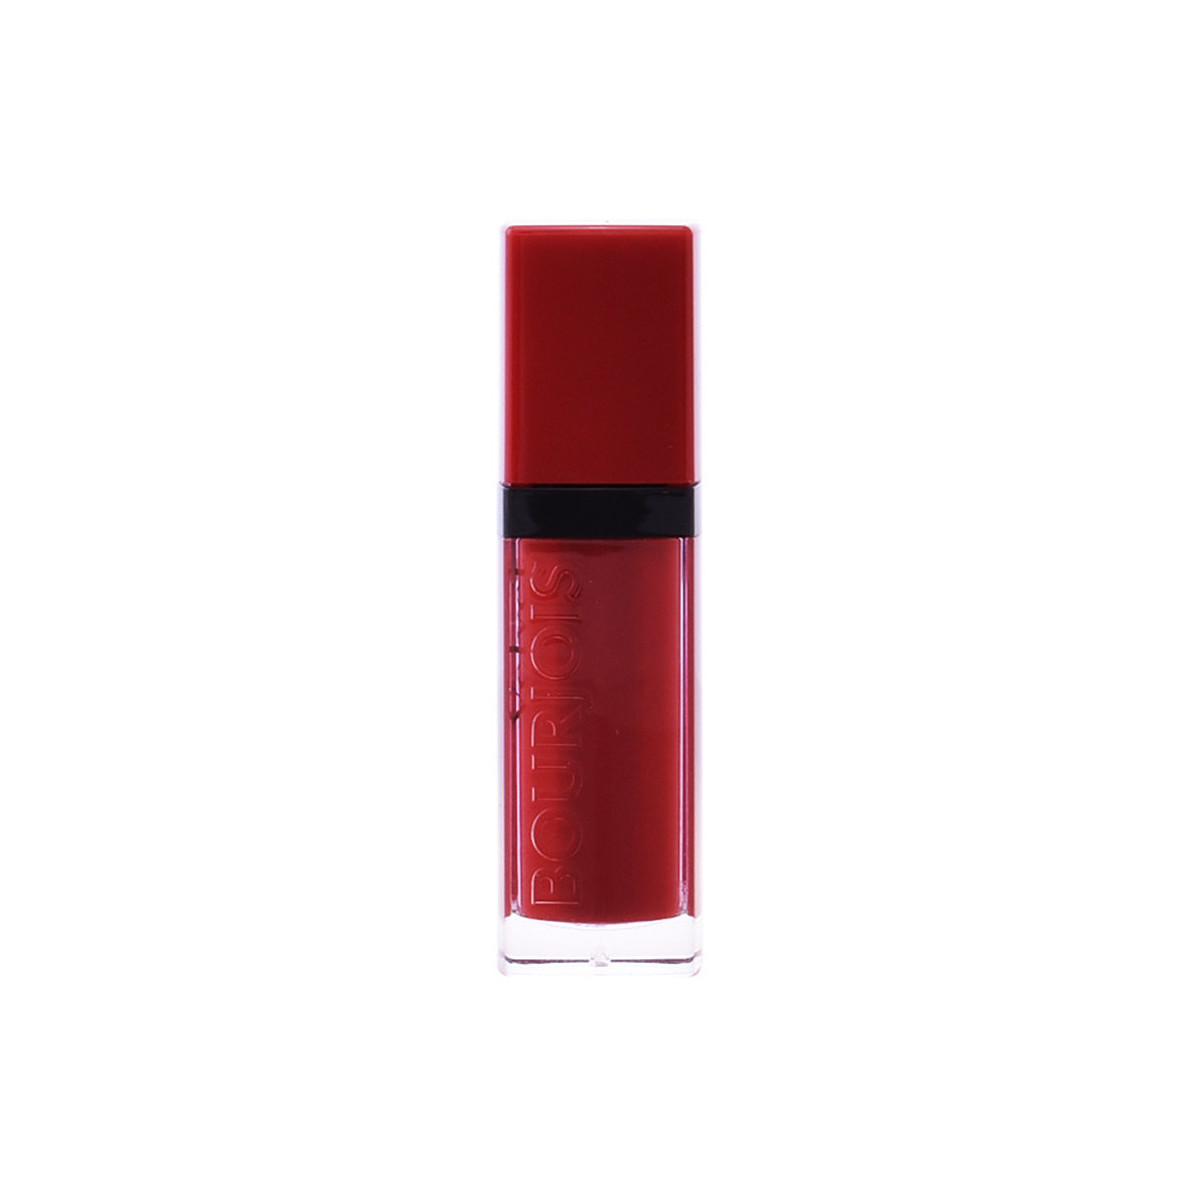 Beauté Femme La sélection cosy Rouge Velvet Liquid Lipstick 15-red Volution 